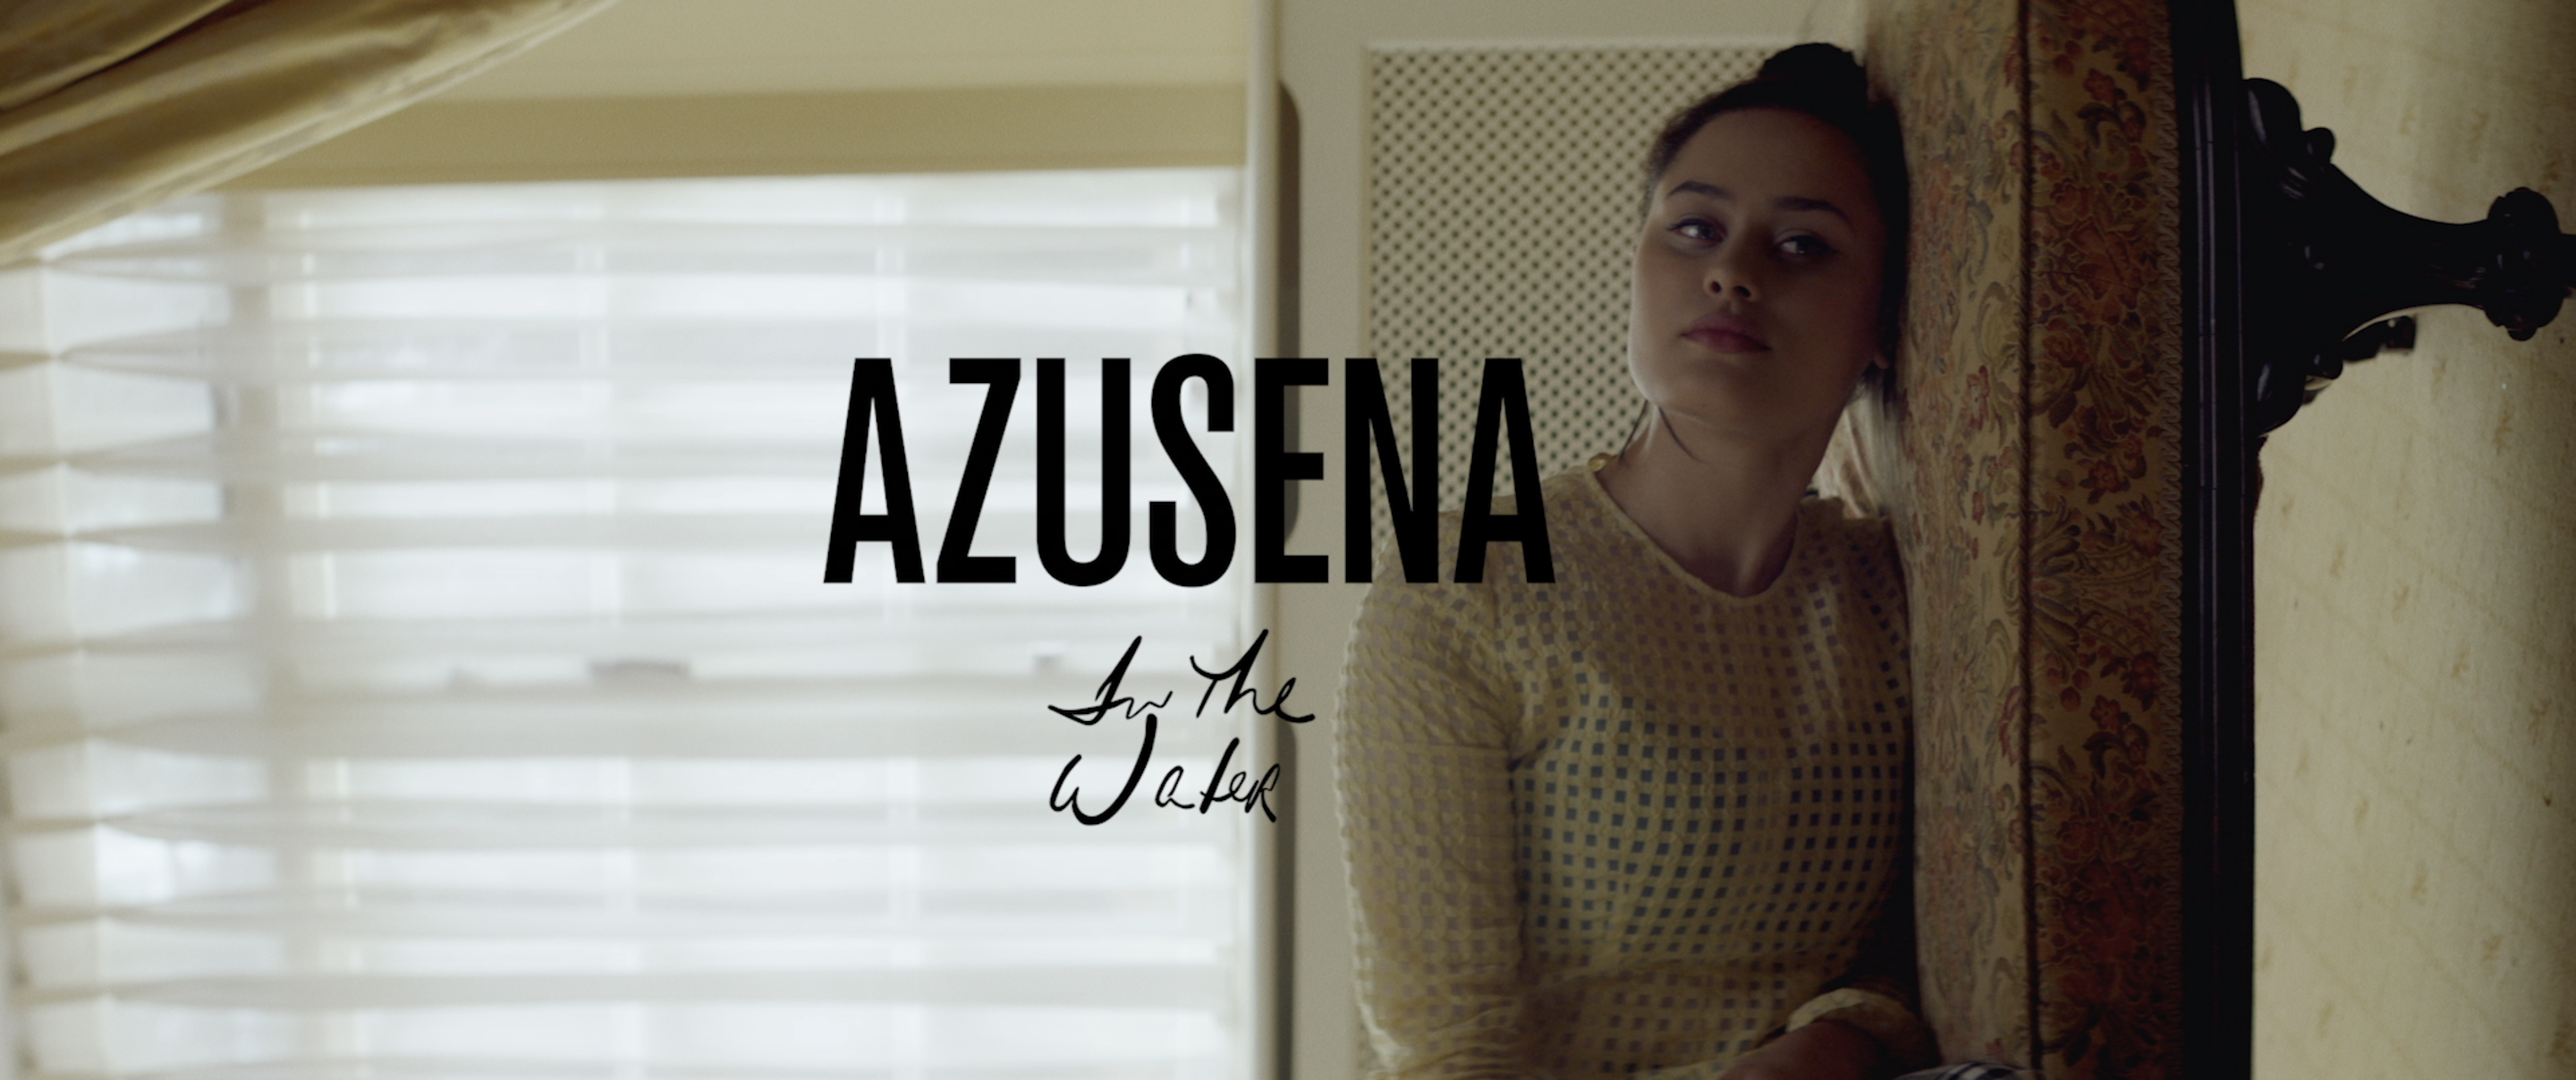 AUSTRIA: Azusena - In The Water  9d9d4803c451c121